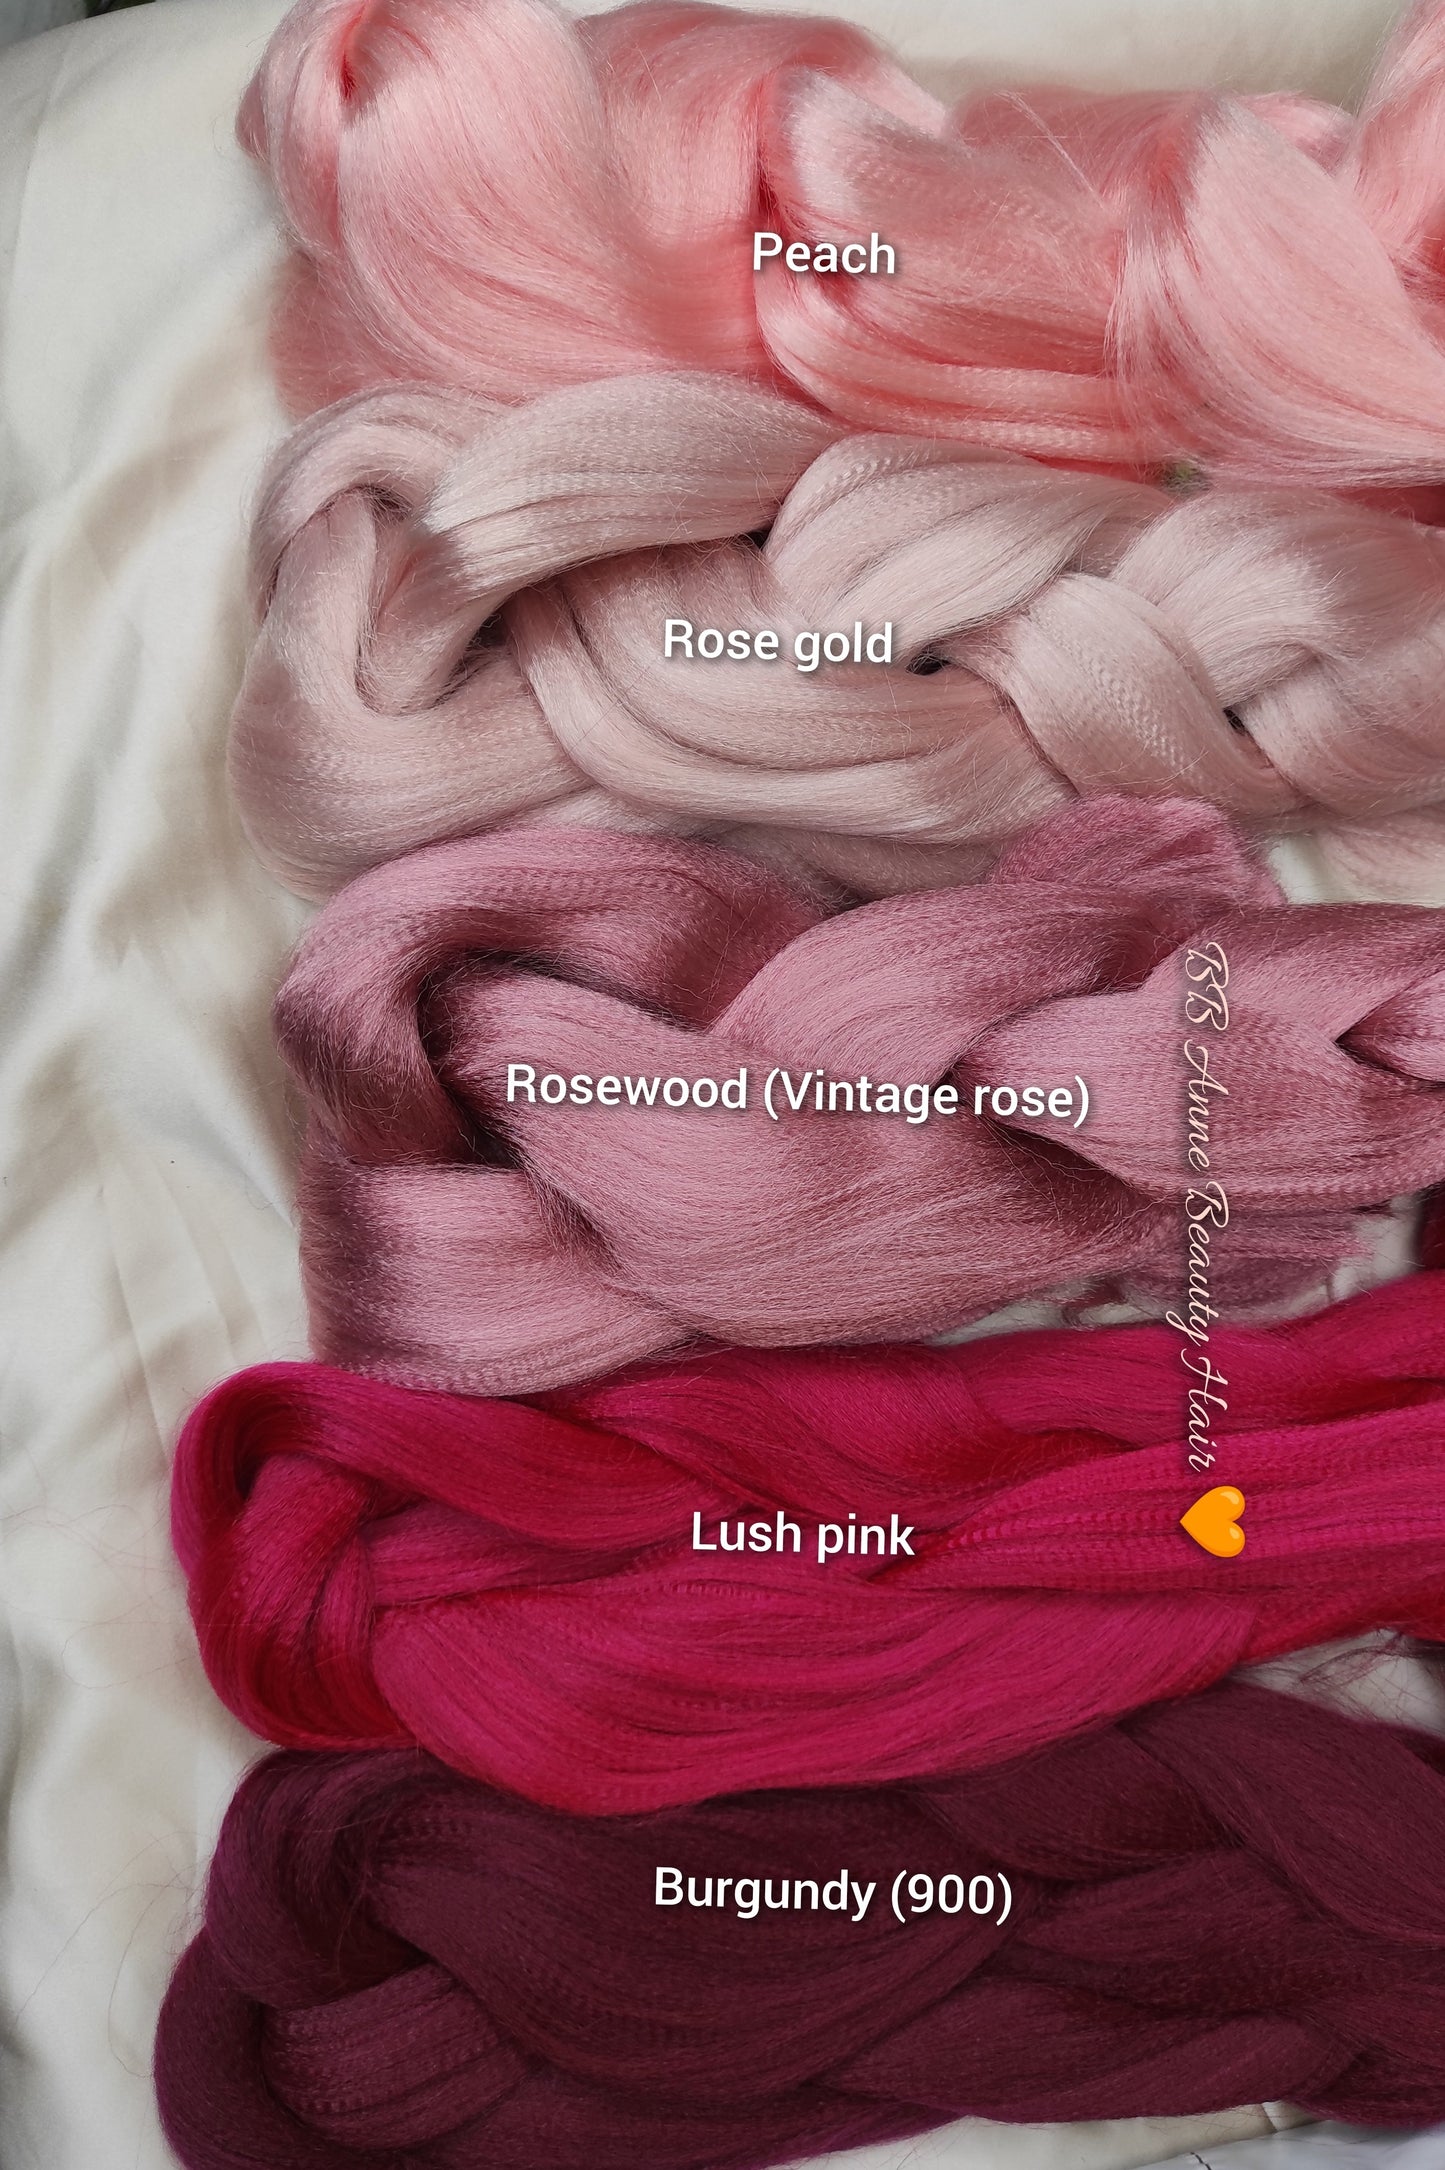 BOHO-GODDESS BRAIDS || Crochet Braids || 100% Human Hair Curls